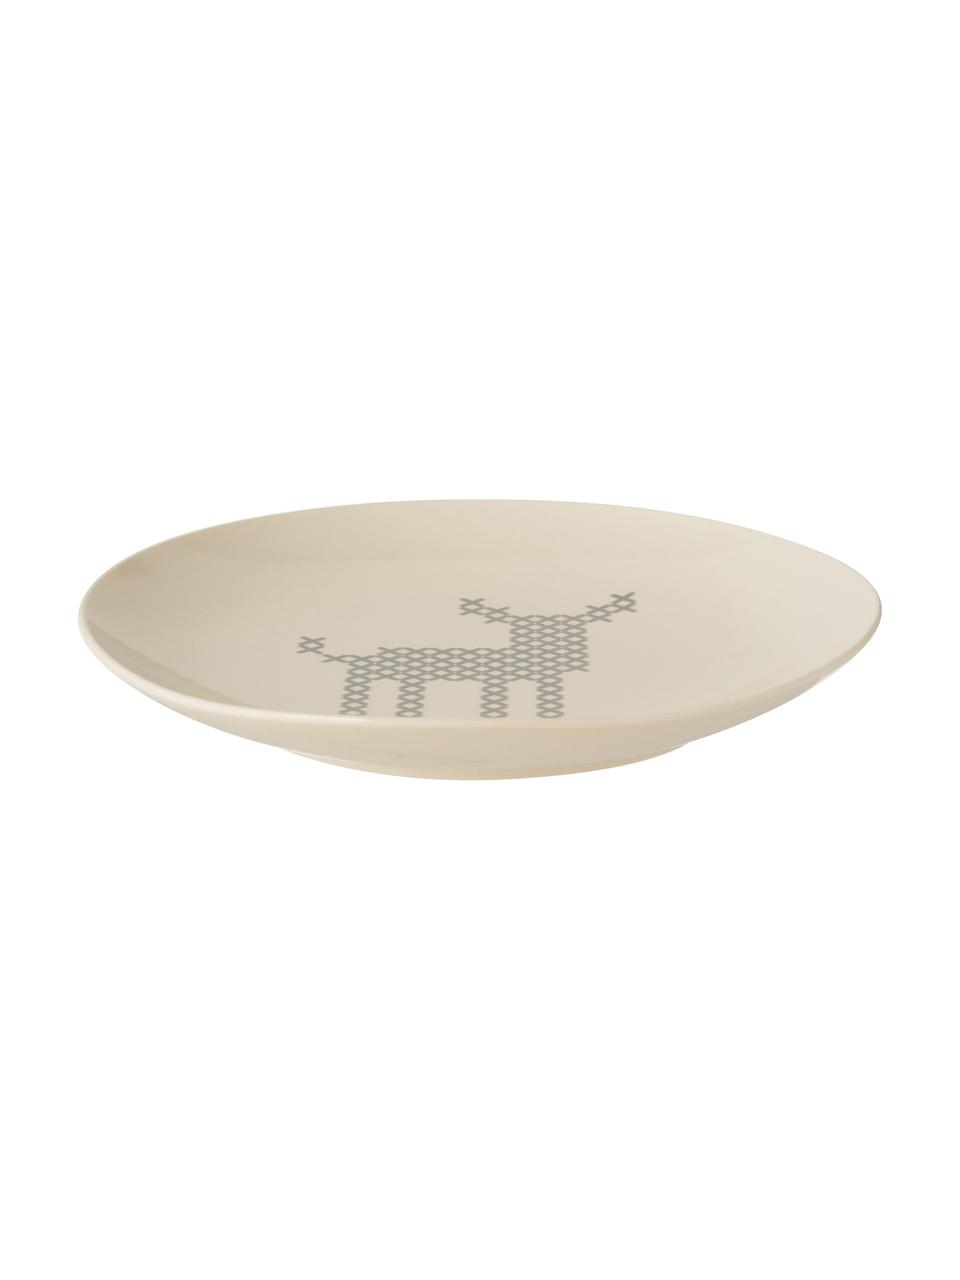 Raňajkový tanier s motívom jeleňa Cross, Keramika, Lomená biela, sivá, Ø 20 cm